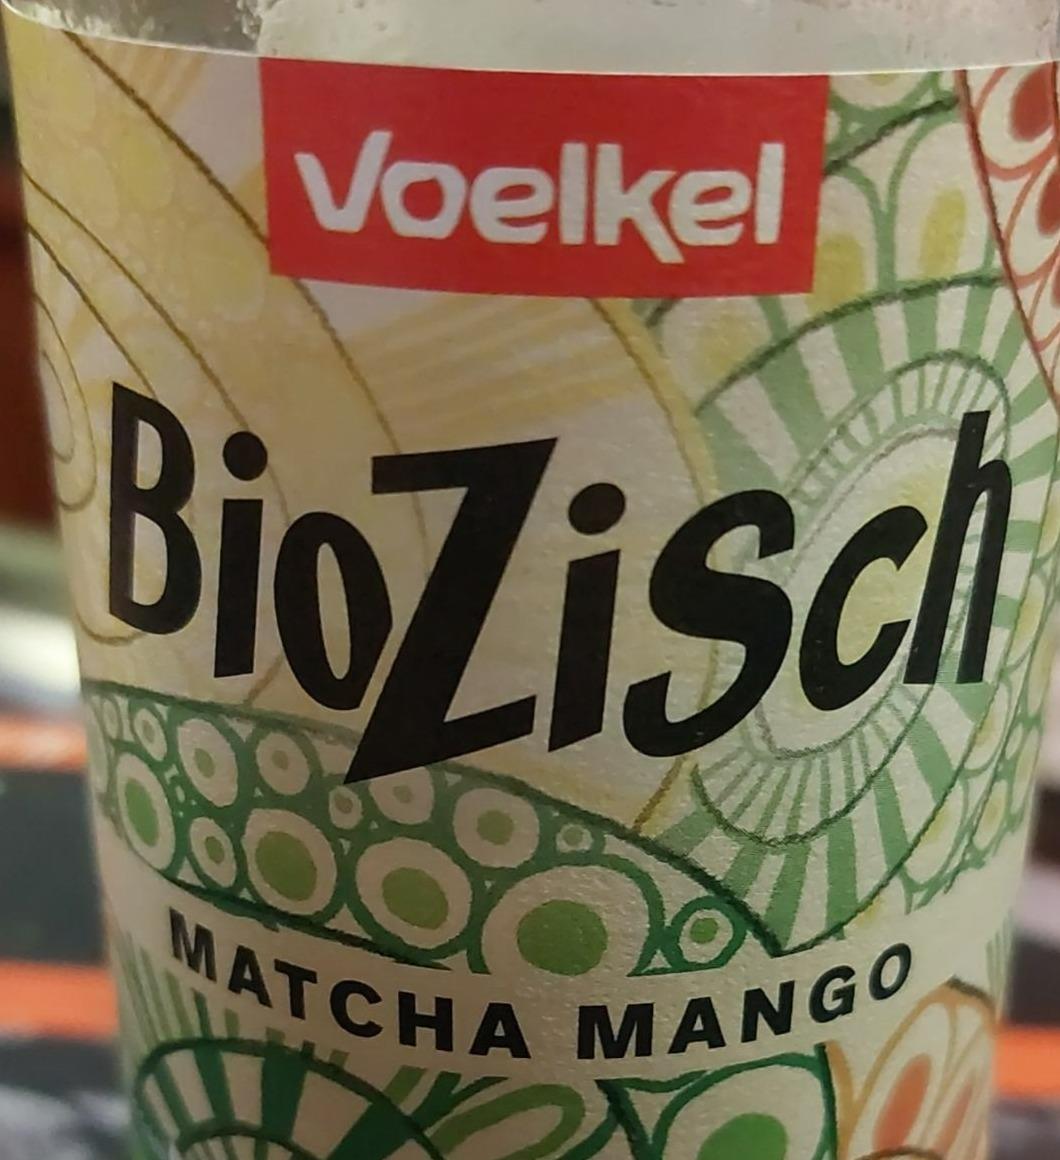 Fotografie - BioZisch Matcha mango Voelkel